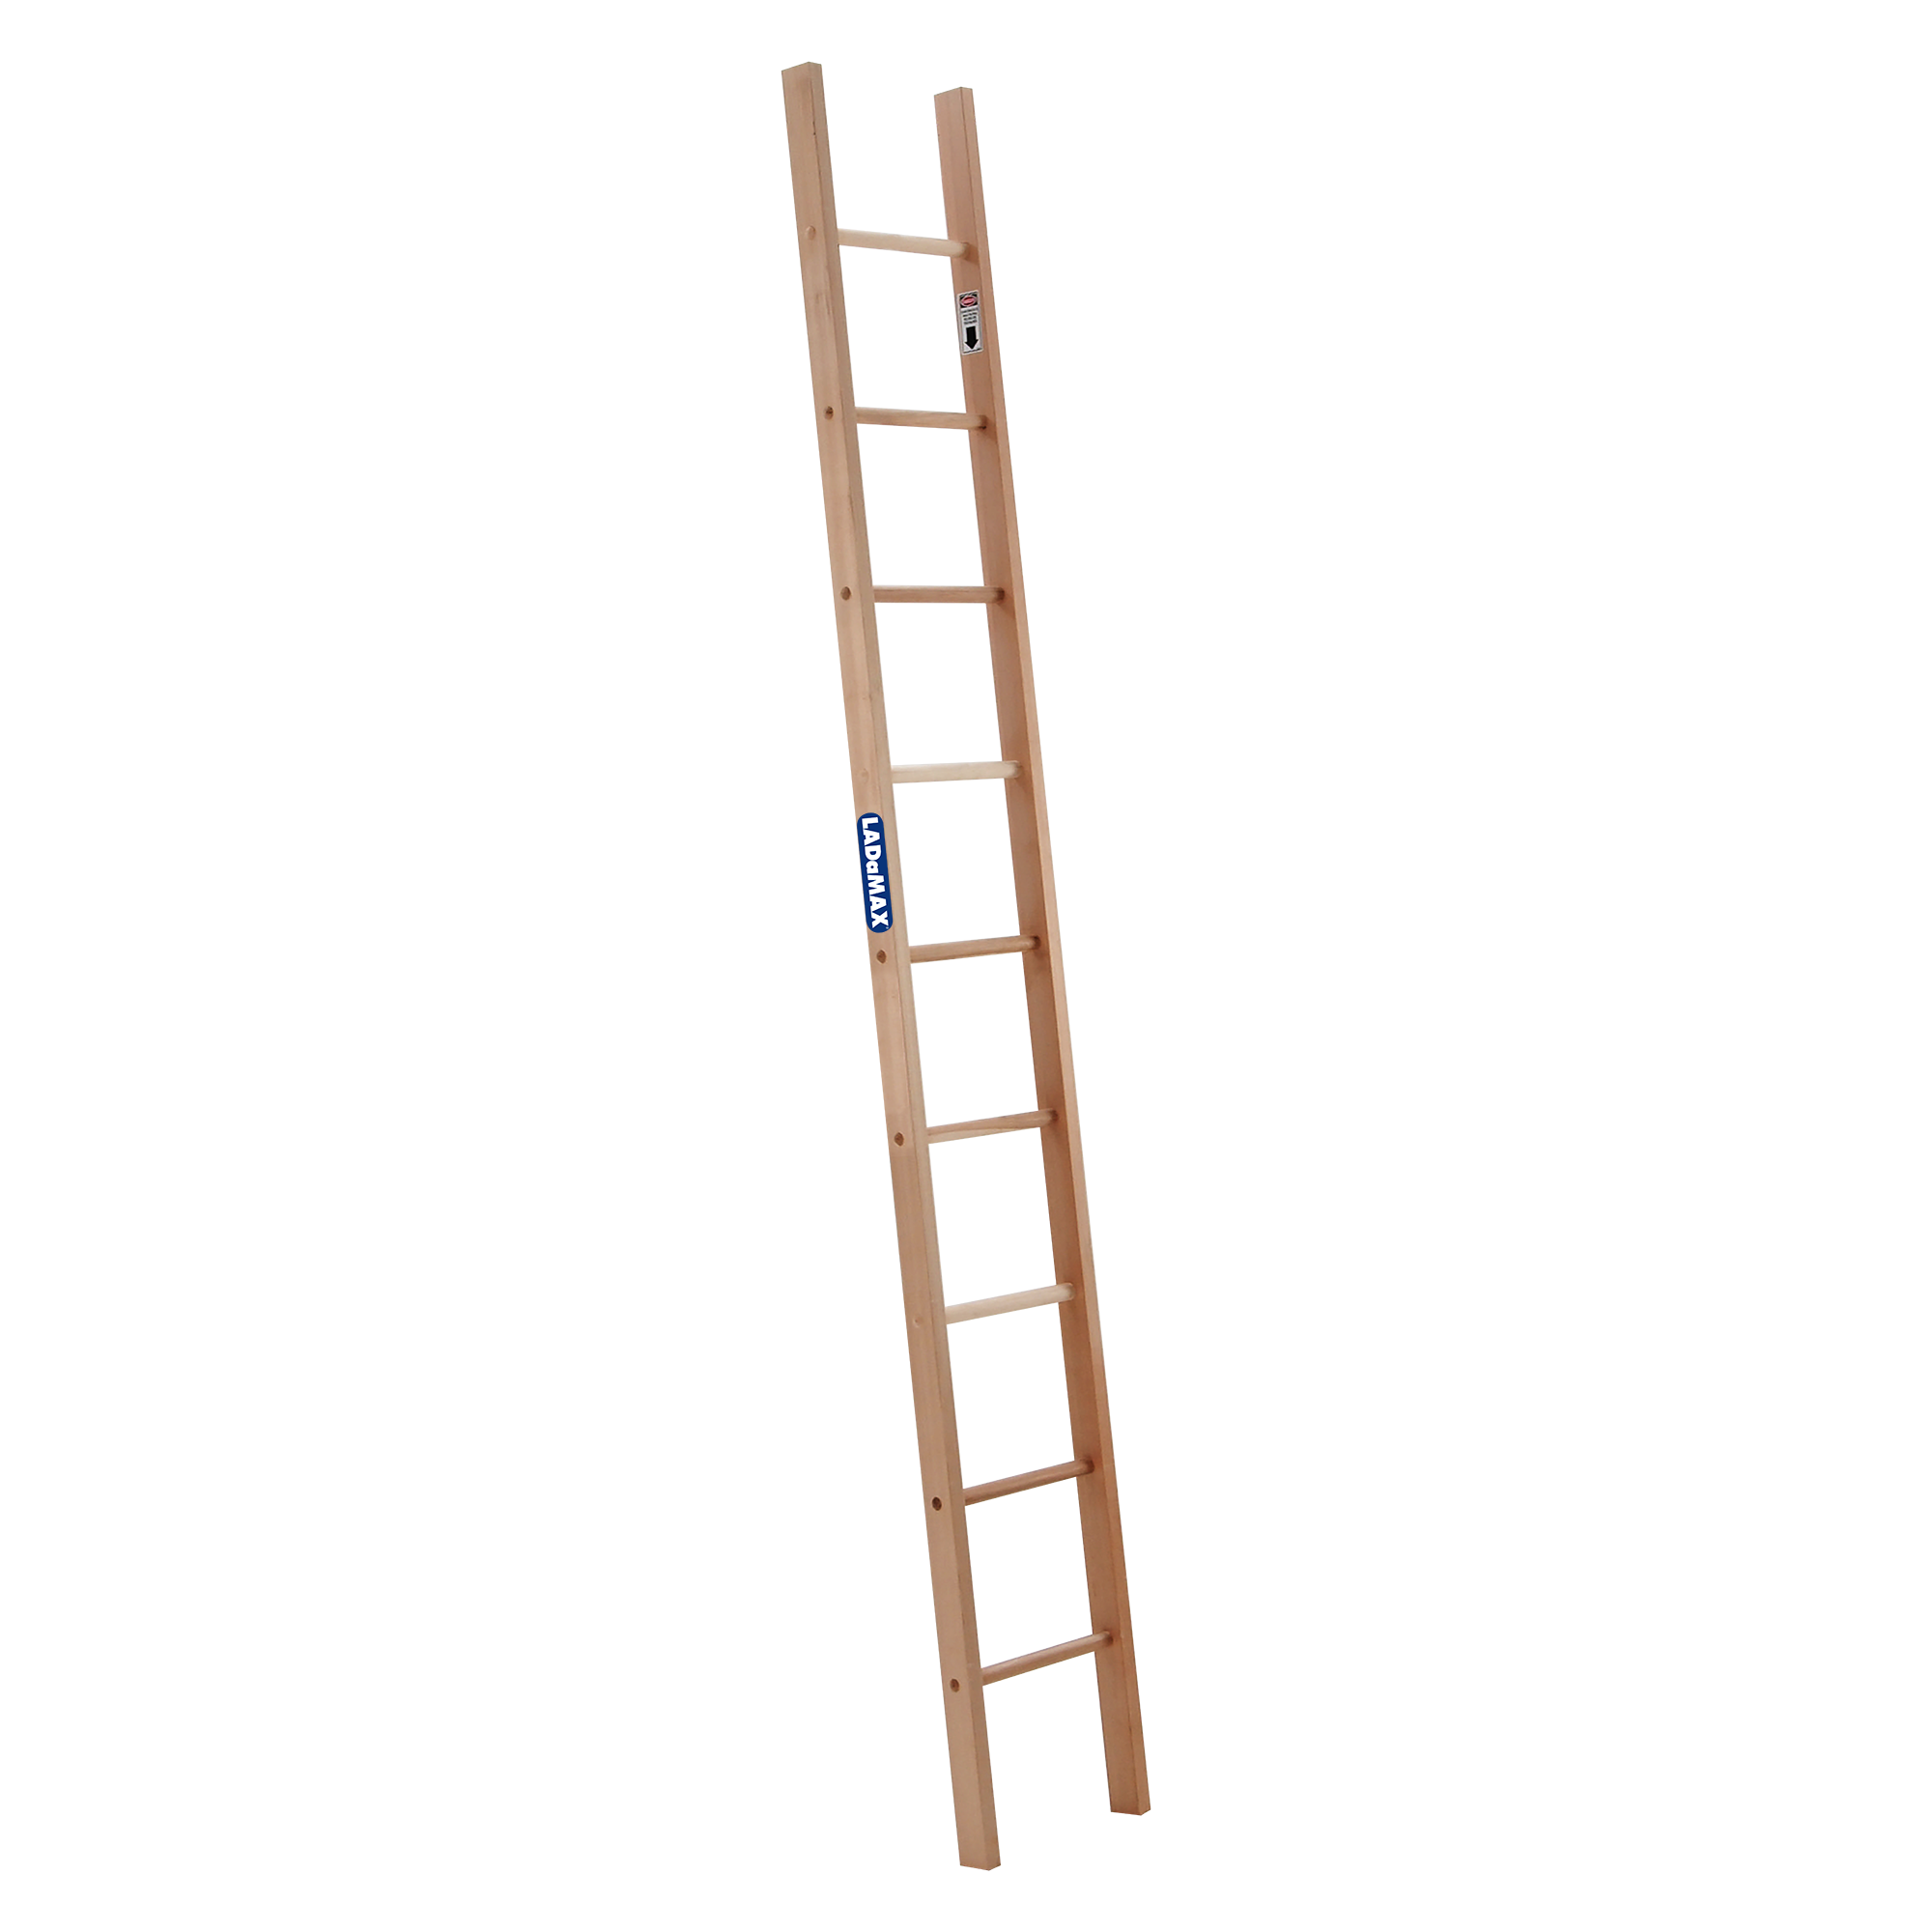 Download PNG image - Ladder PNG Image 